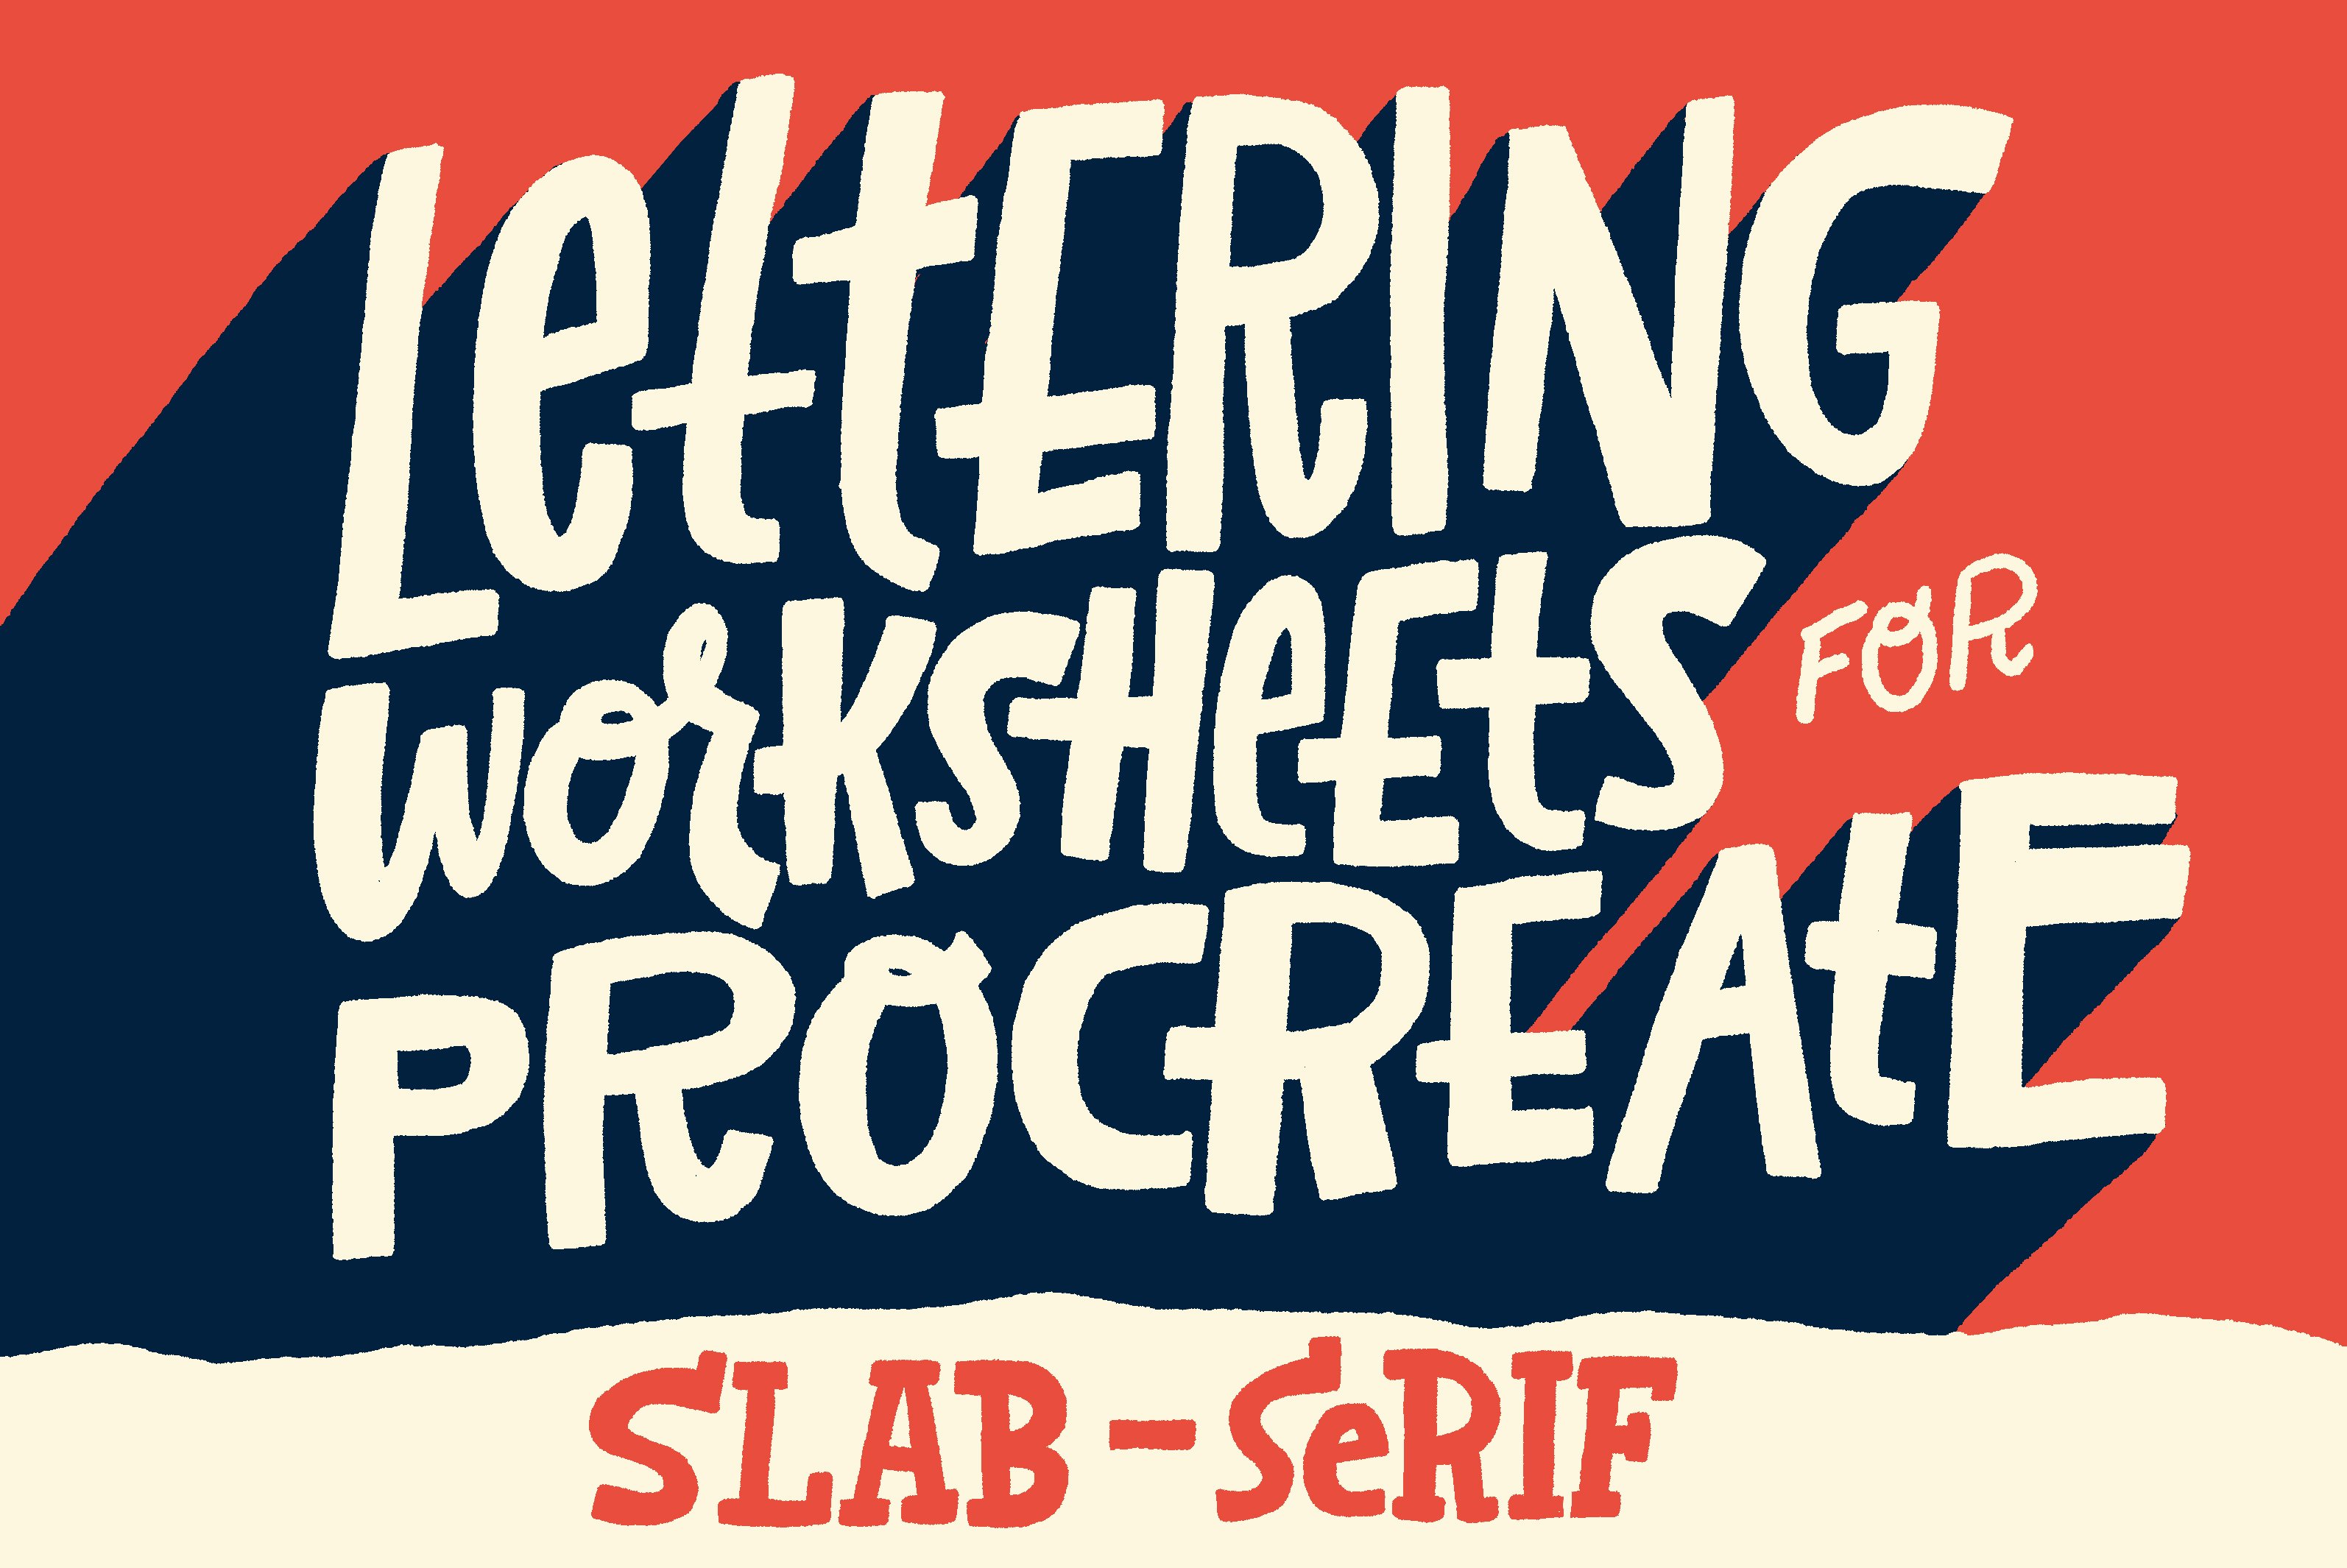 Slab-Serif Lettering Worksheetcover image.